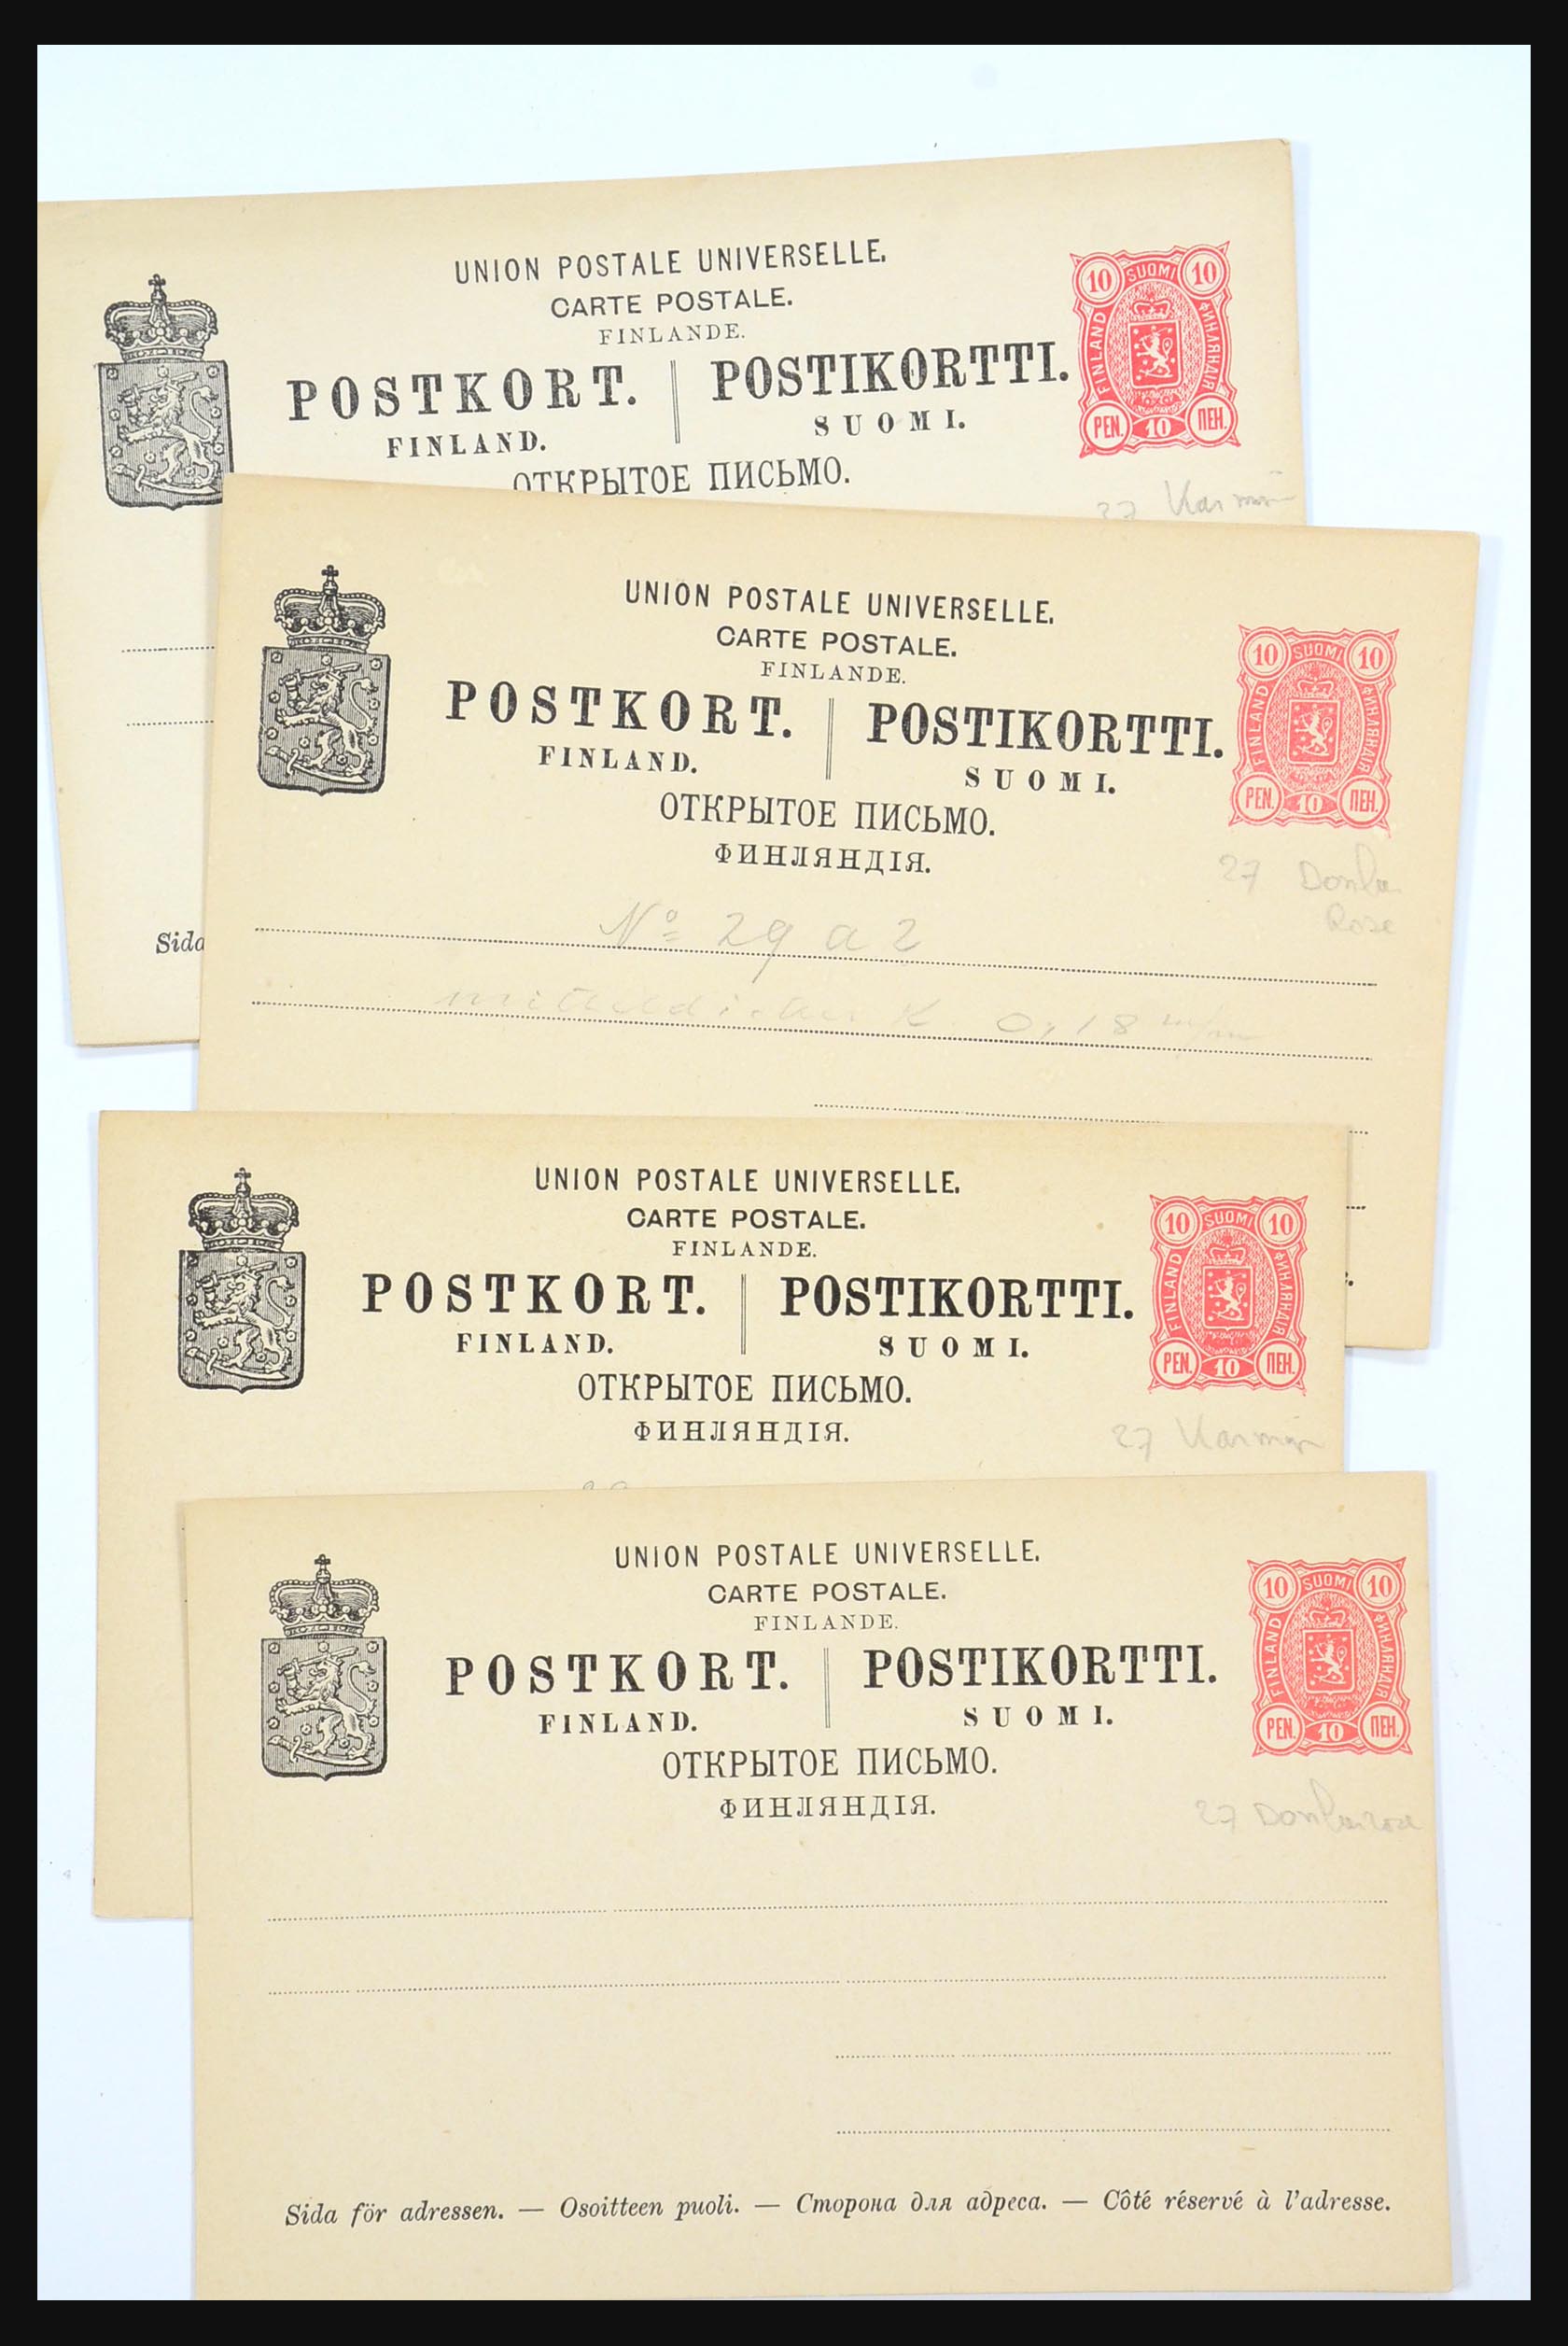 31363 229 - 31363 Finland brieven 1874-1974.